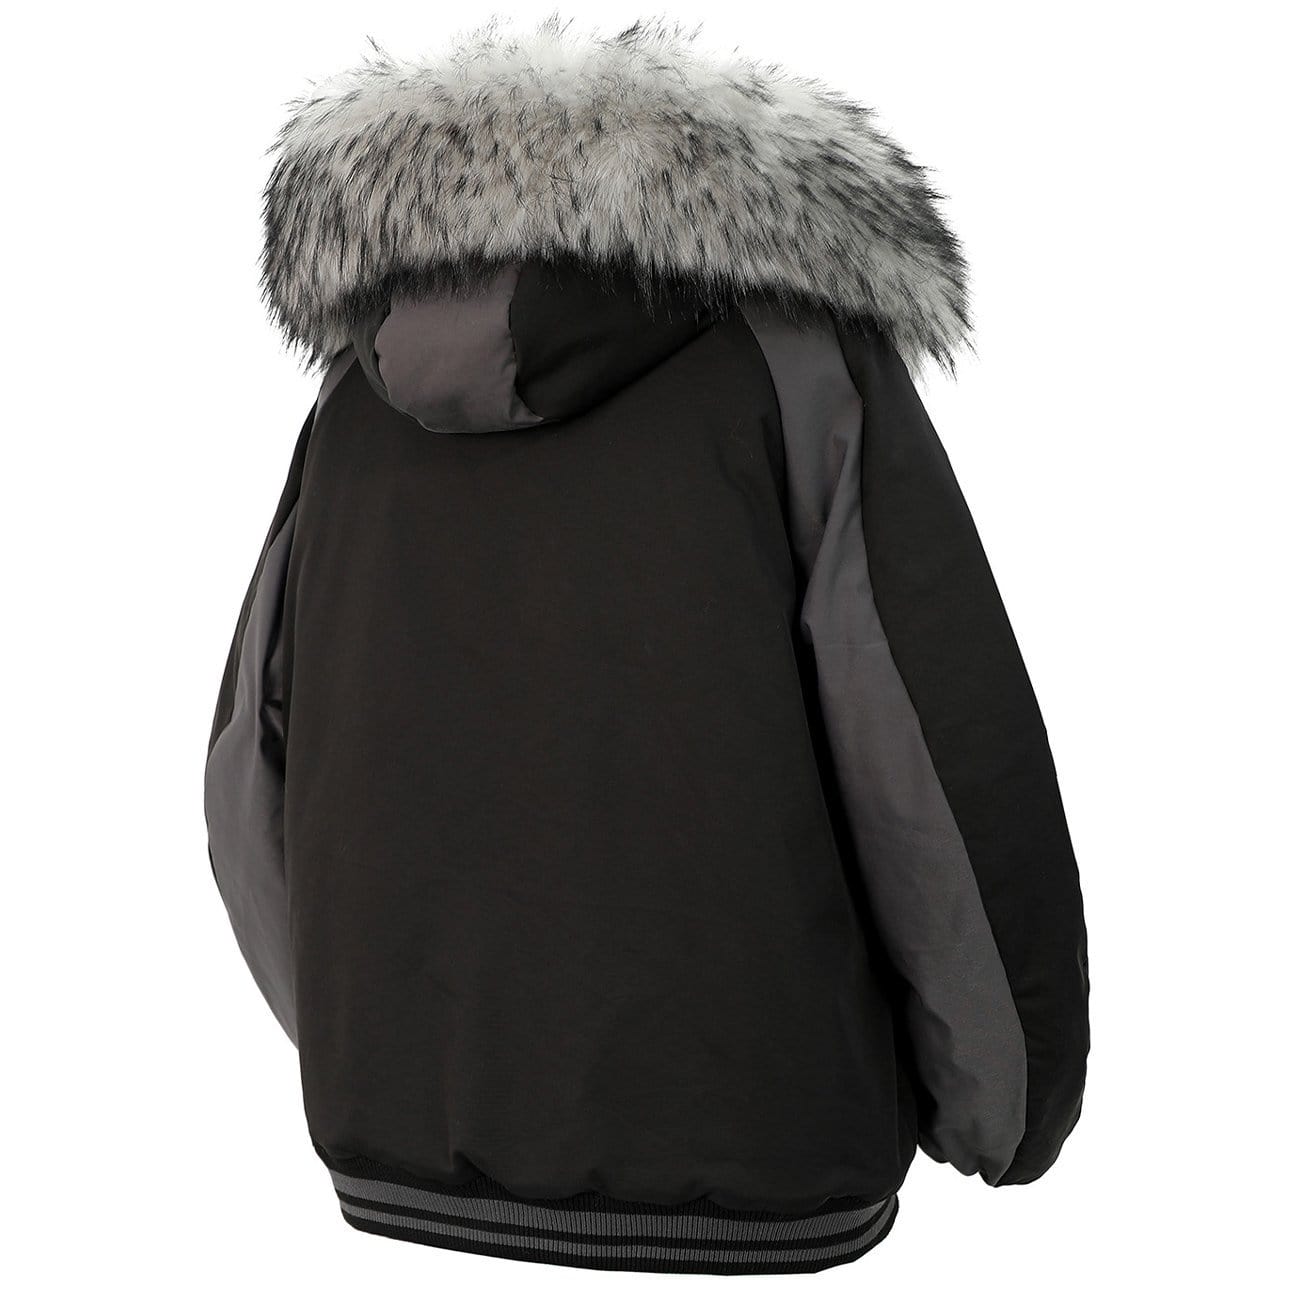 TO Detachable Fur Collar Hat Winter Coat